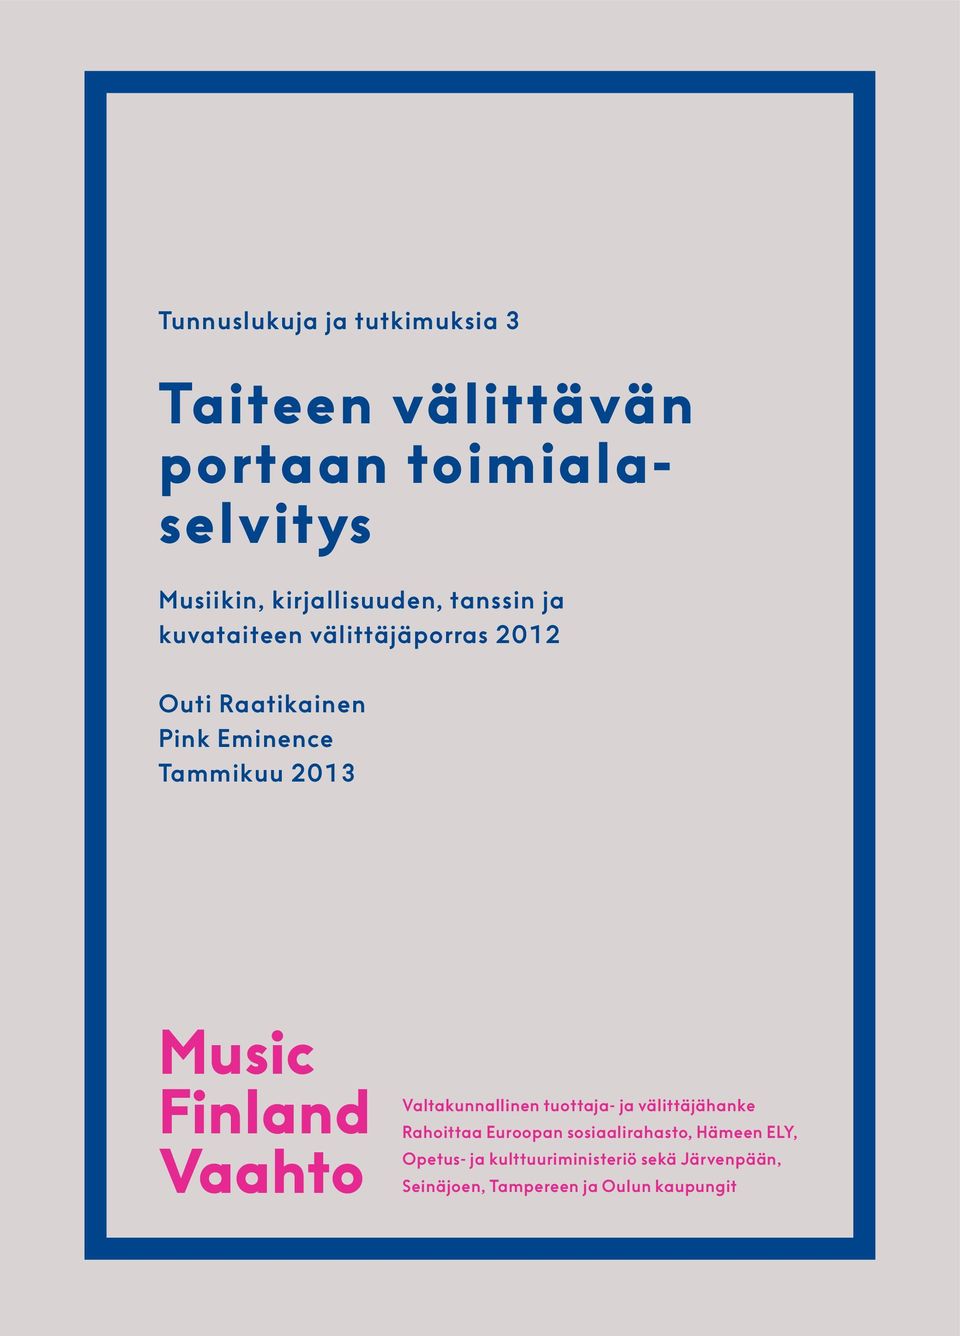 Tammikuu 2013 Music Finland Vaahto Valtakunnallinen tuottaja- ja välittäjähanke Rahoittaa